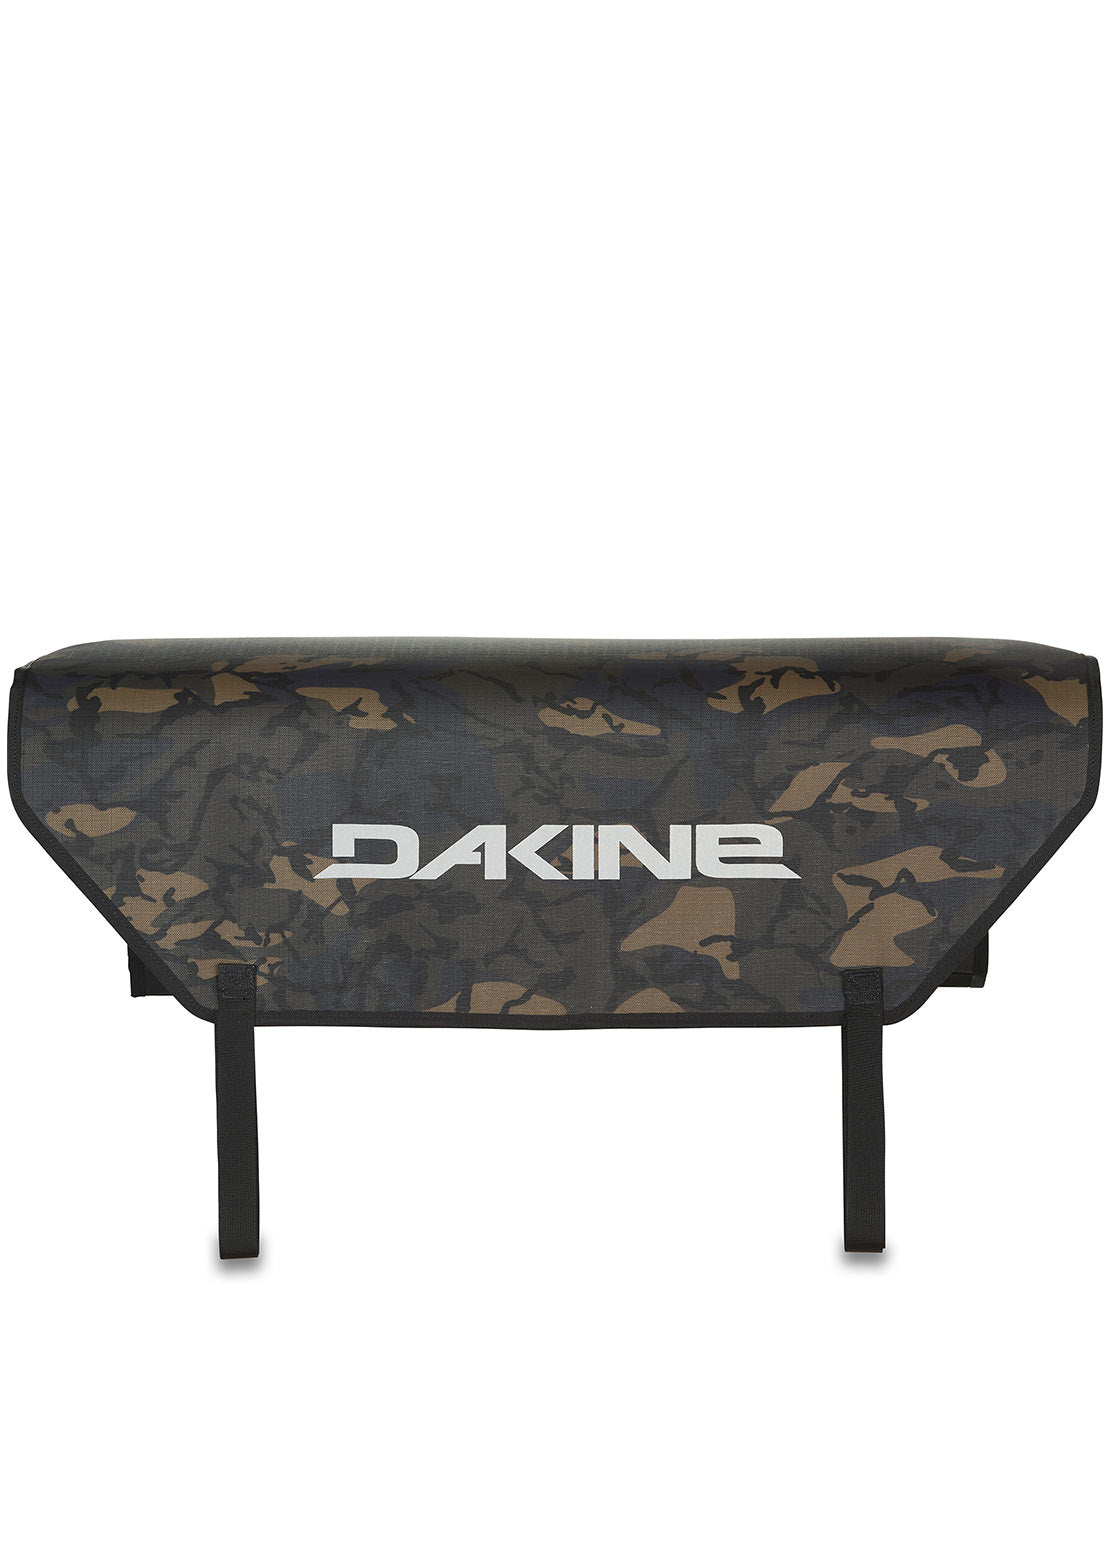 Dakine Pickup Pad Halfside Tailgate Cascade Camo